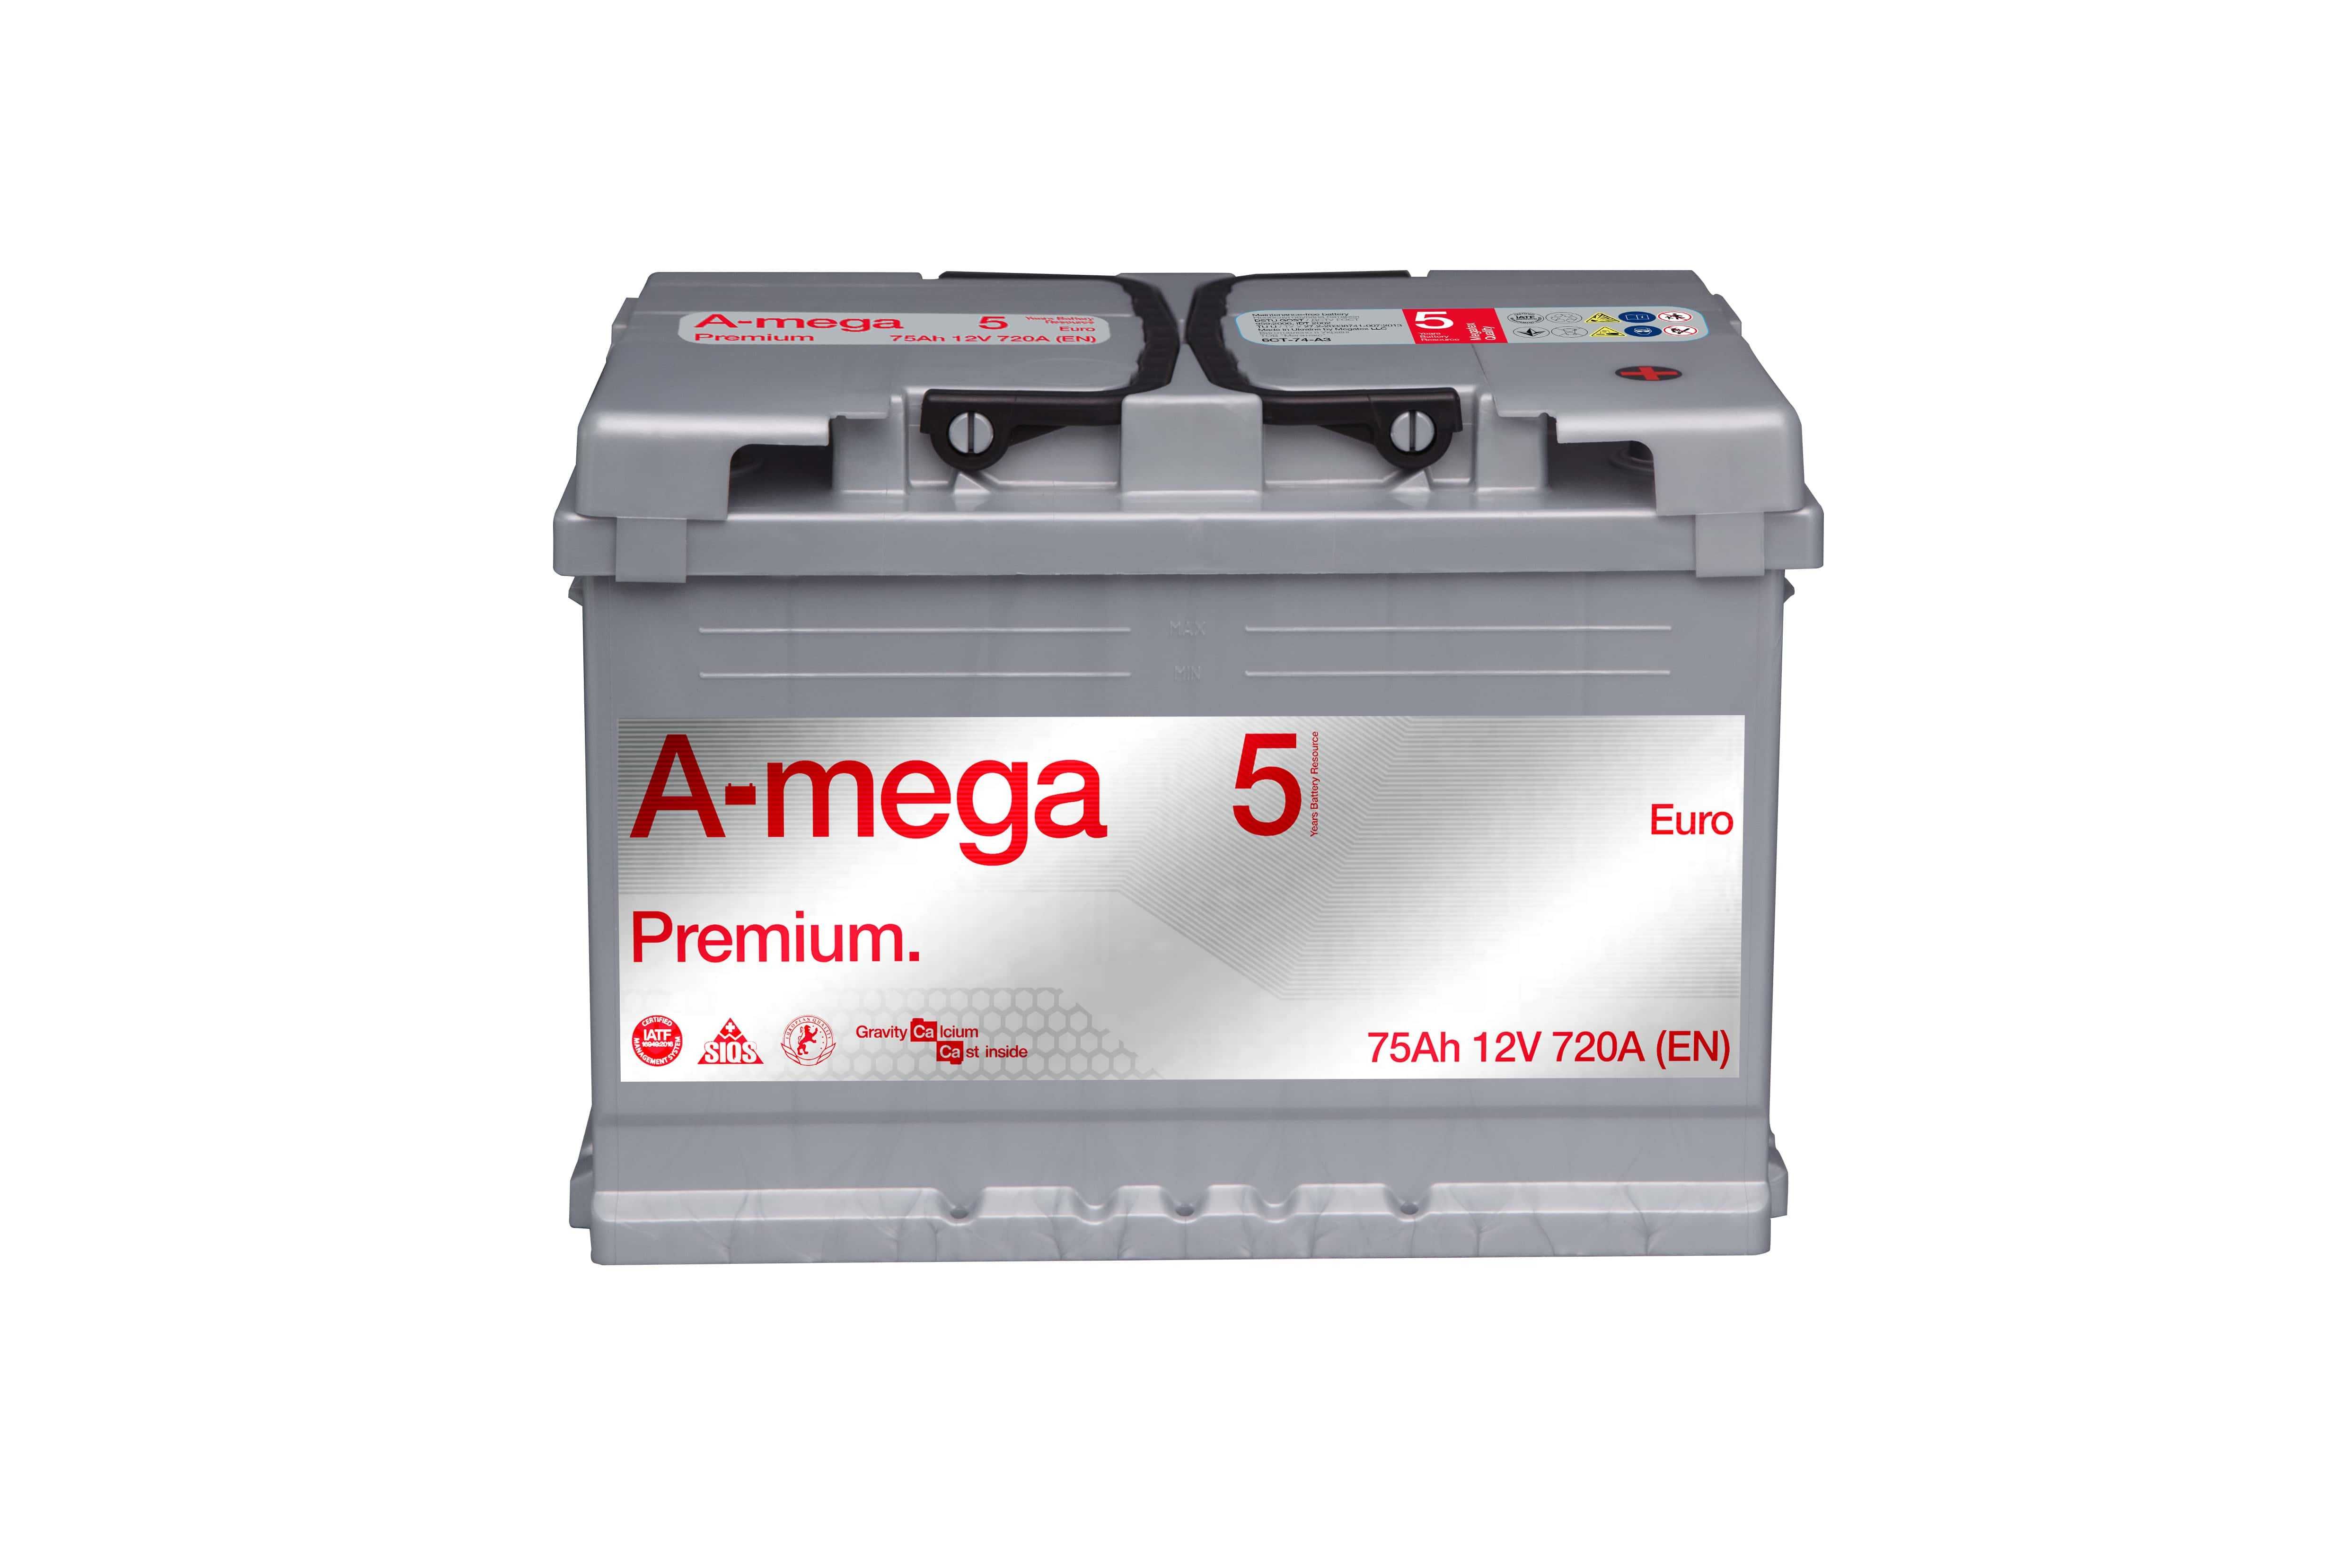 Akumulator Amega 74 75 Ah 720 A (EN) PREMIUM M5 + GRATIS ZA 50ZŁ